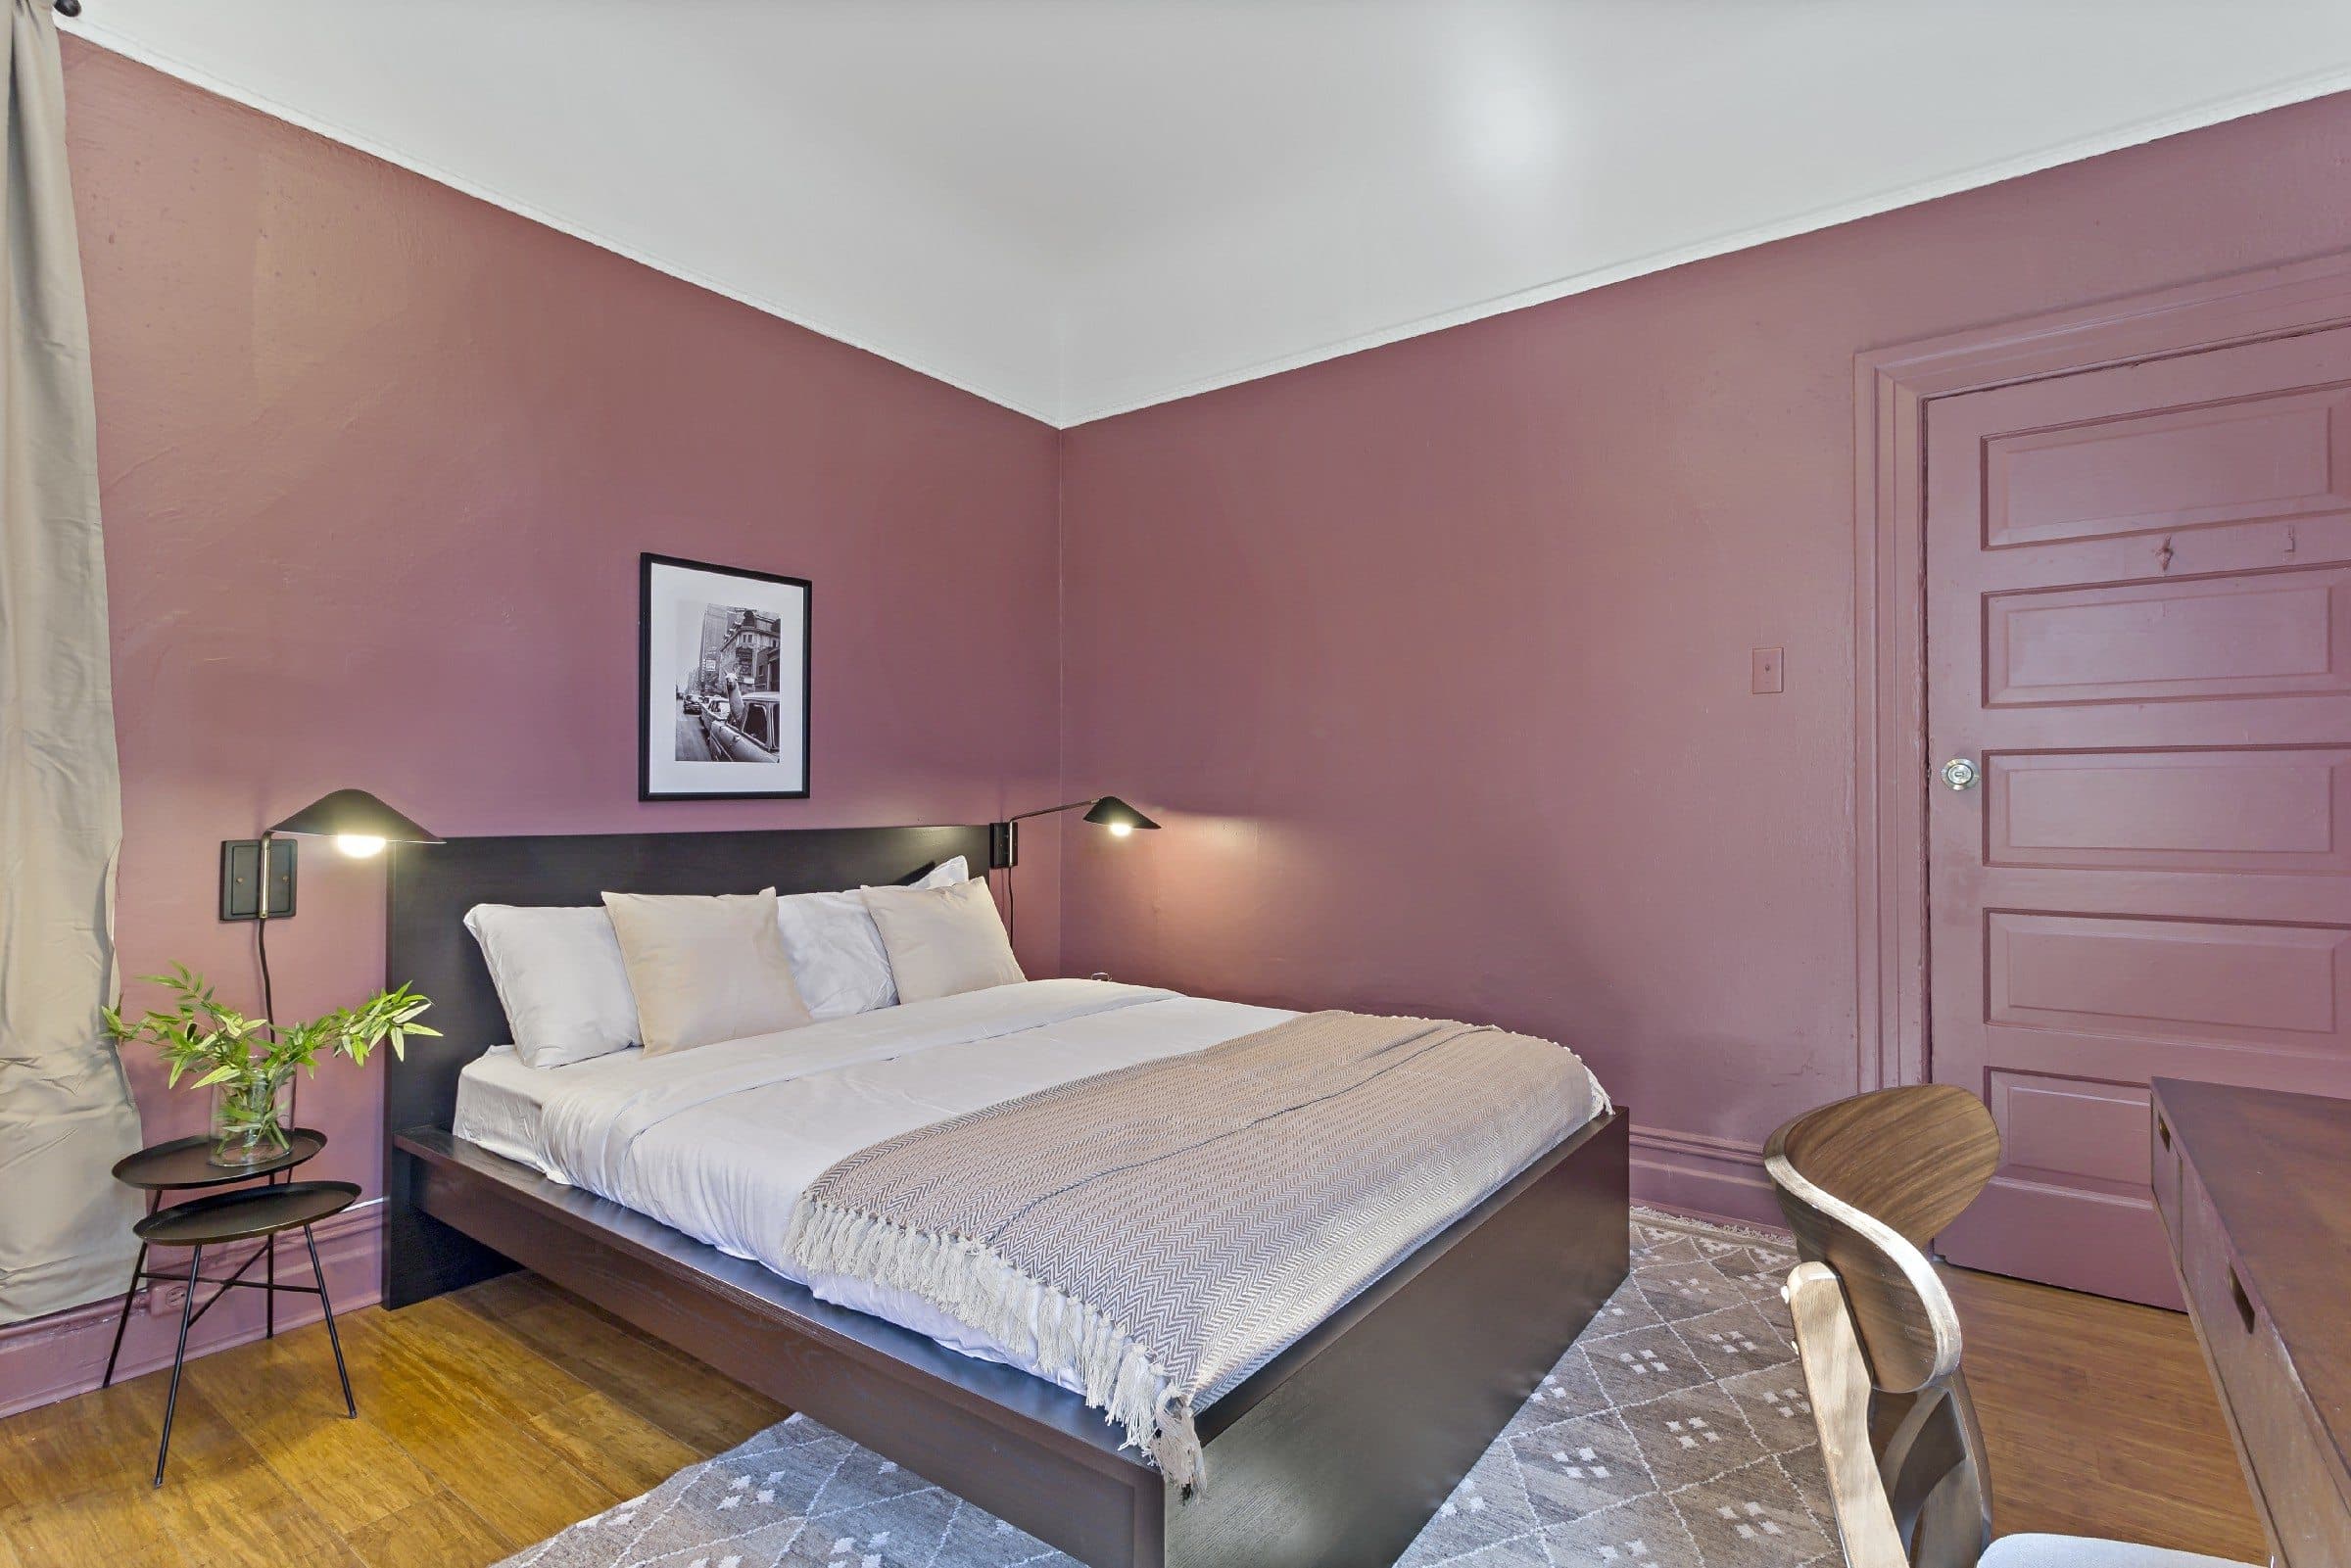 Photo 17 of #902: Queen Bedroom B at June Homes